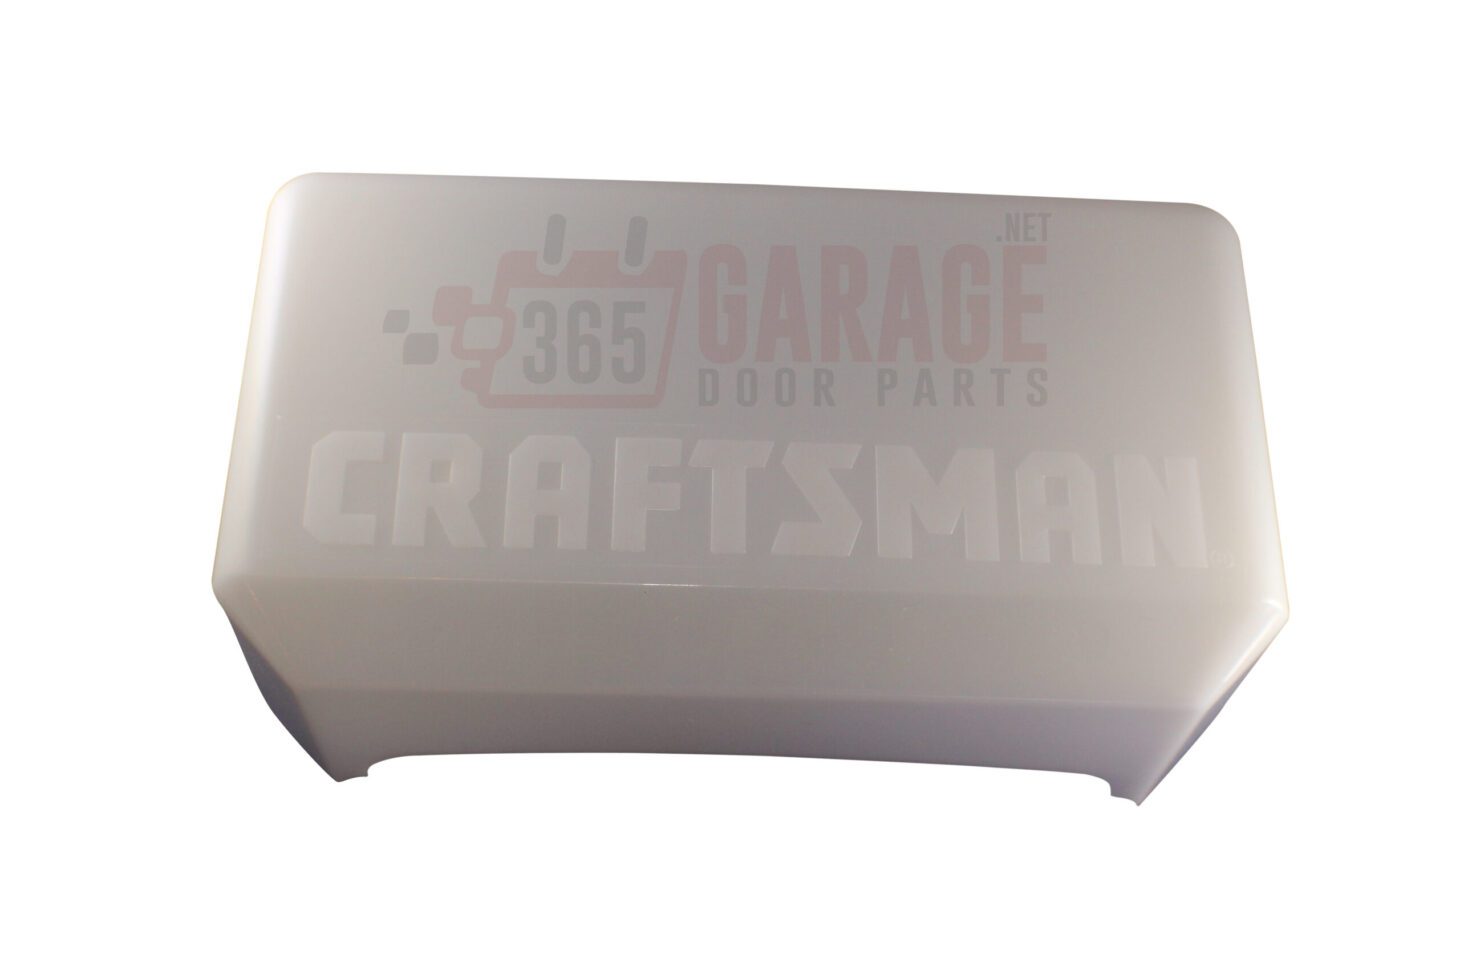 RB LIFTMASTER Chamberlain Sears Craftsman Garage Door Opener Light Cover 108D34